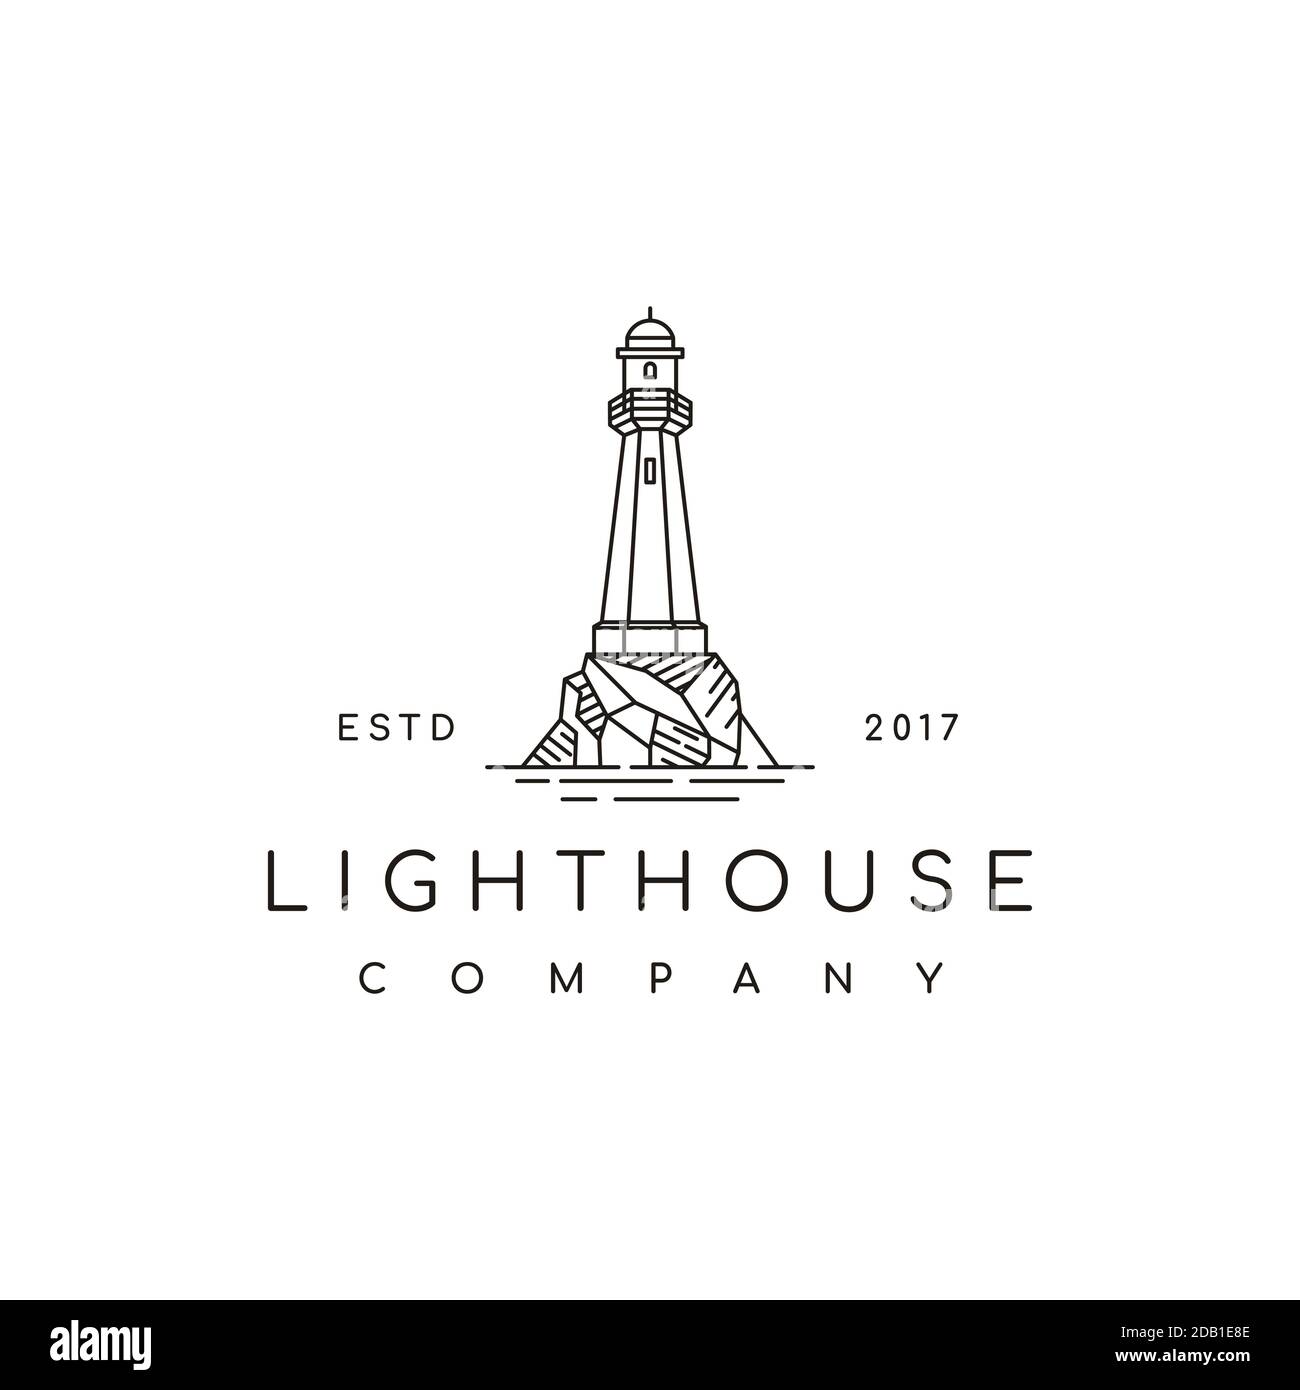 Simple Line Art Lighthouse Searchlight Beacon Tower Island Beach Coast logo design Stock Vector